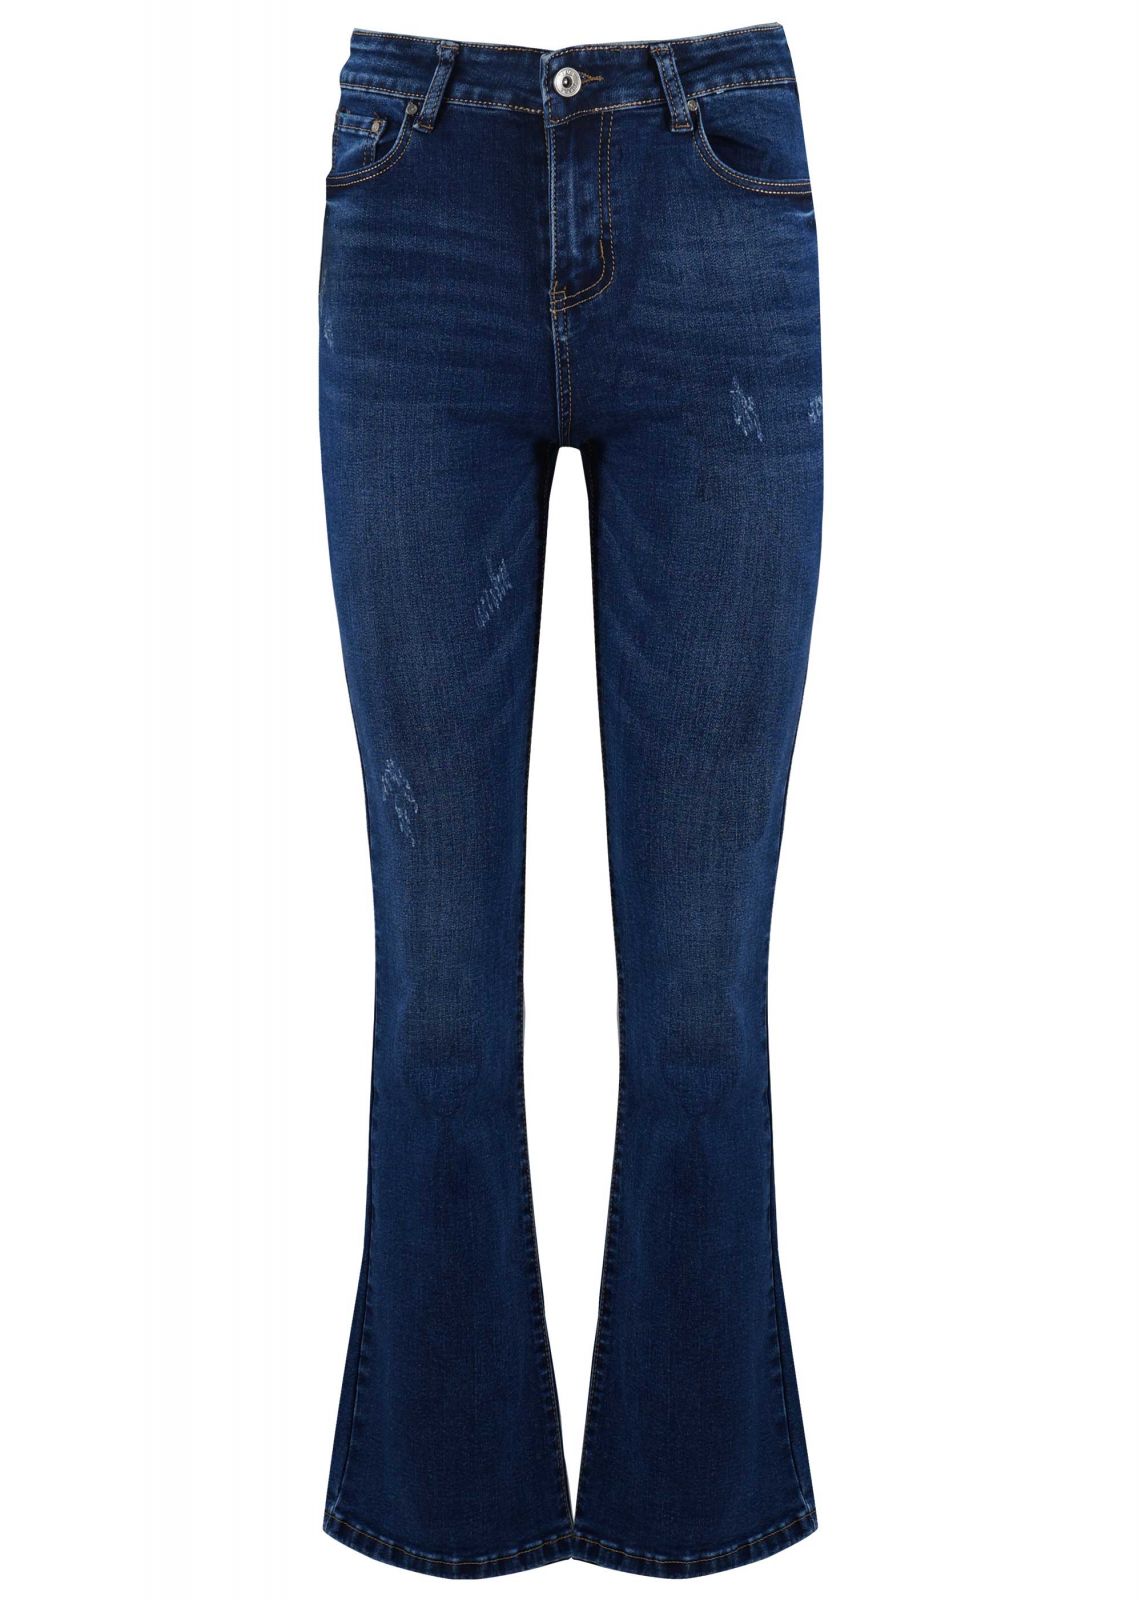 Γυναικείο παντελόνι jean boot-cut ψηλόμεσο ελαστικό. Denim Collection